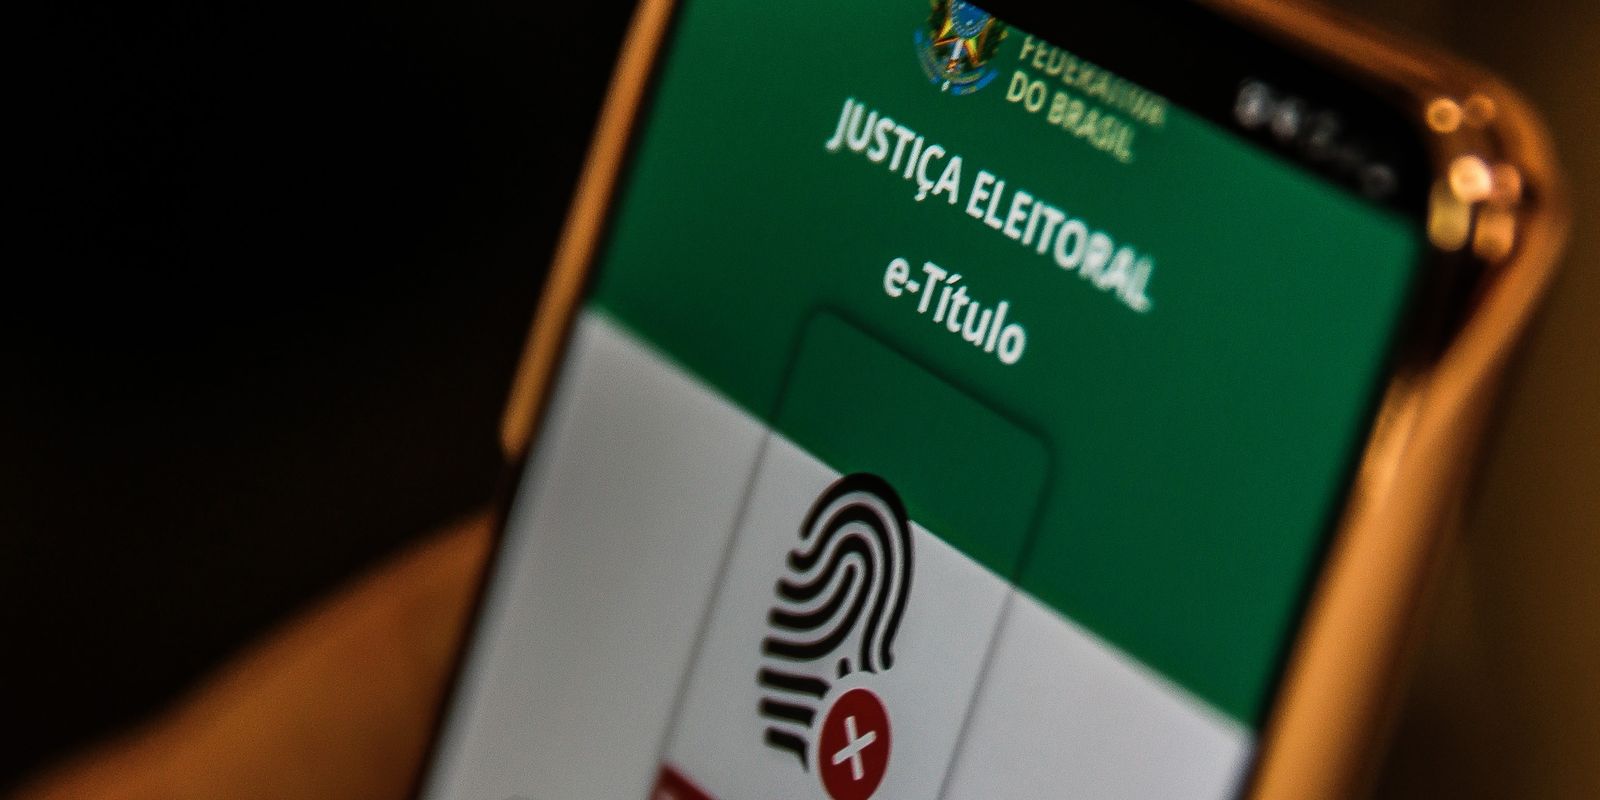 Usuários do app e-Título receberão informações oficiais sobre eleições | Agência Brasil